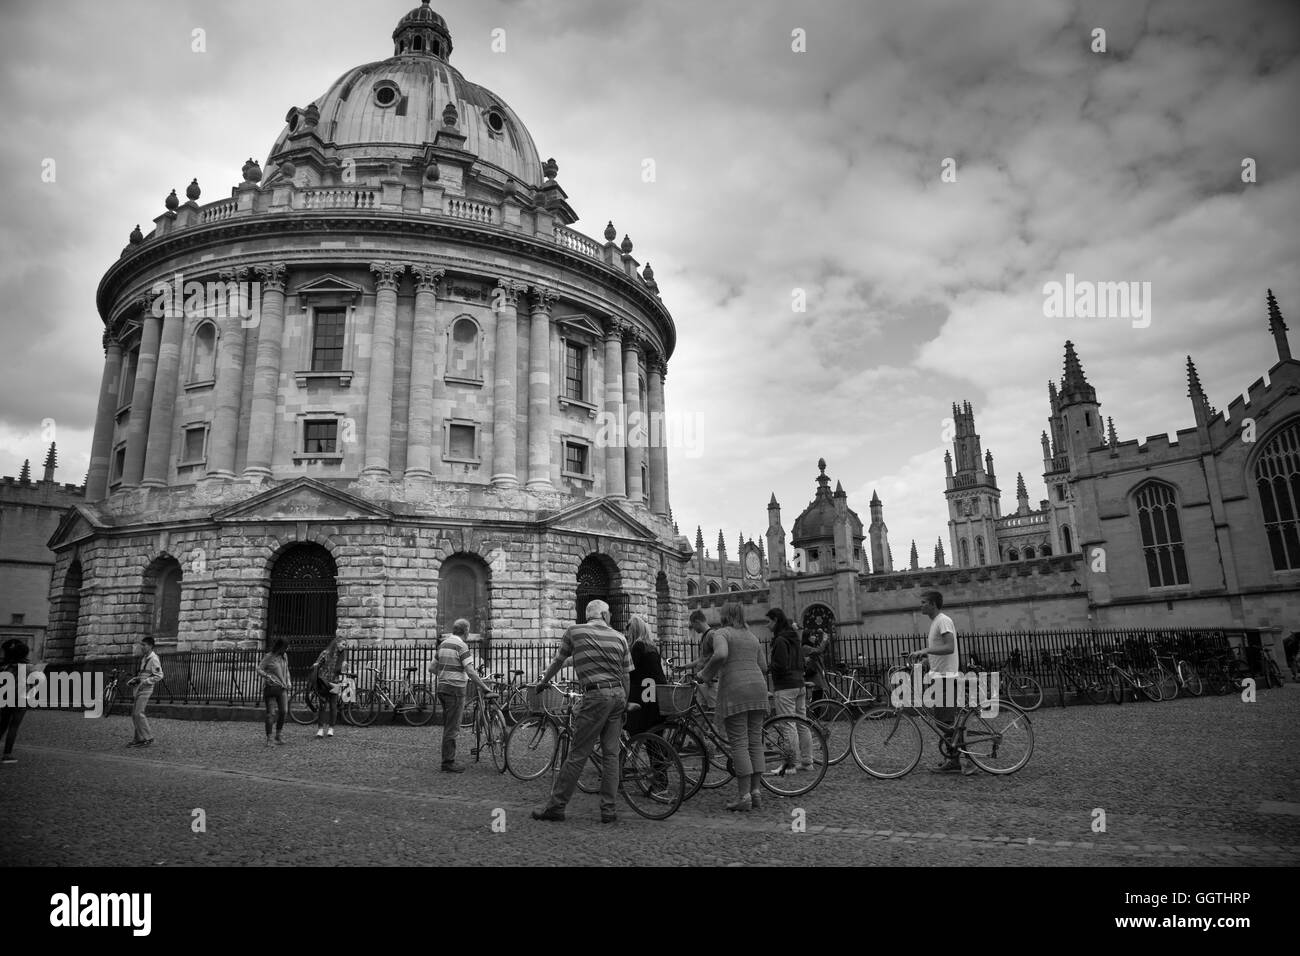 Radcliffe Camera, Oxford (università). 2016. Scena di strada. Questo edificio è stato precedentemente noto come 'libreria fisica". Foto Stock